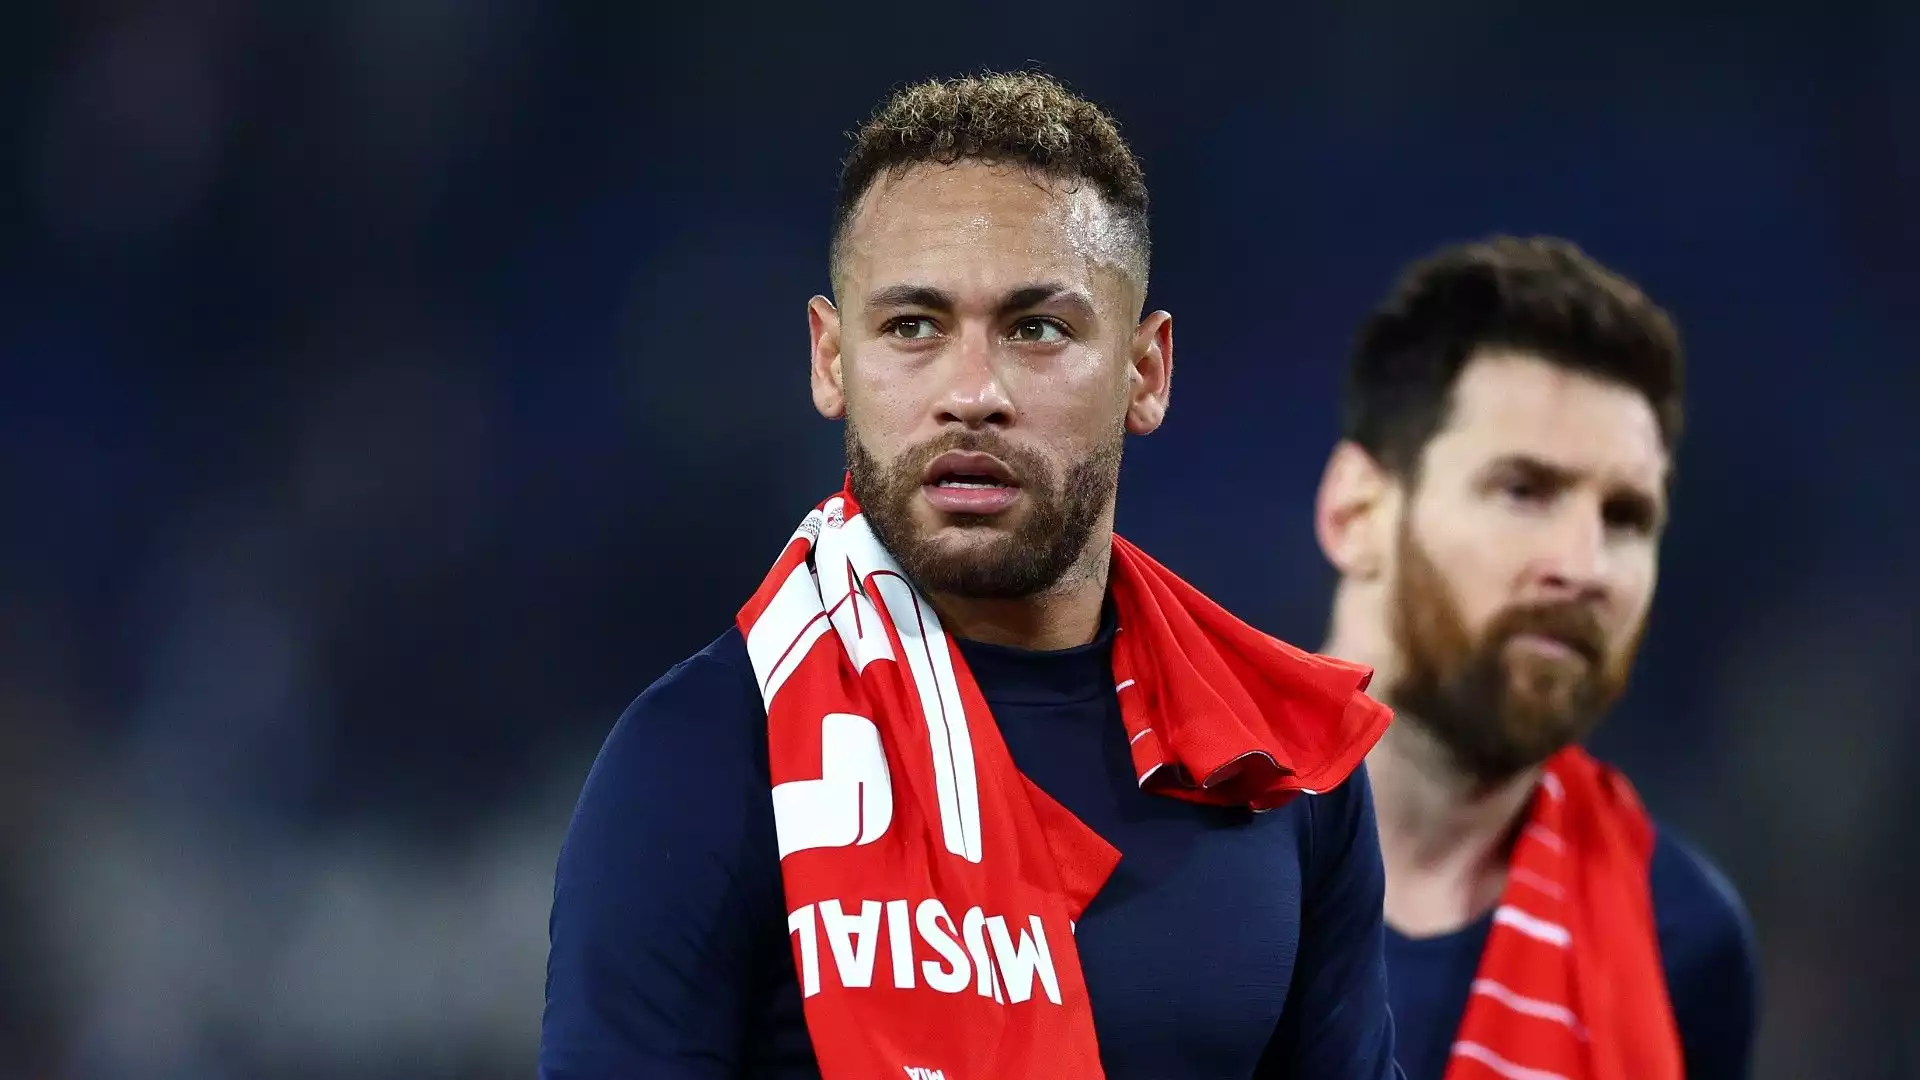 La società francese non si opporrebbe al trasferimento di Neymar